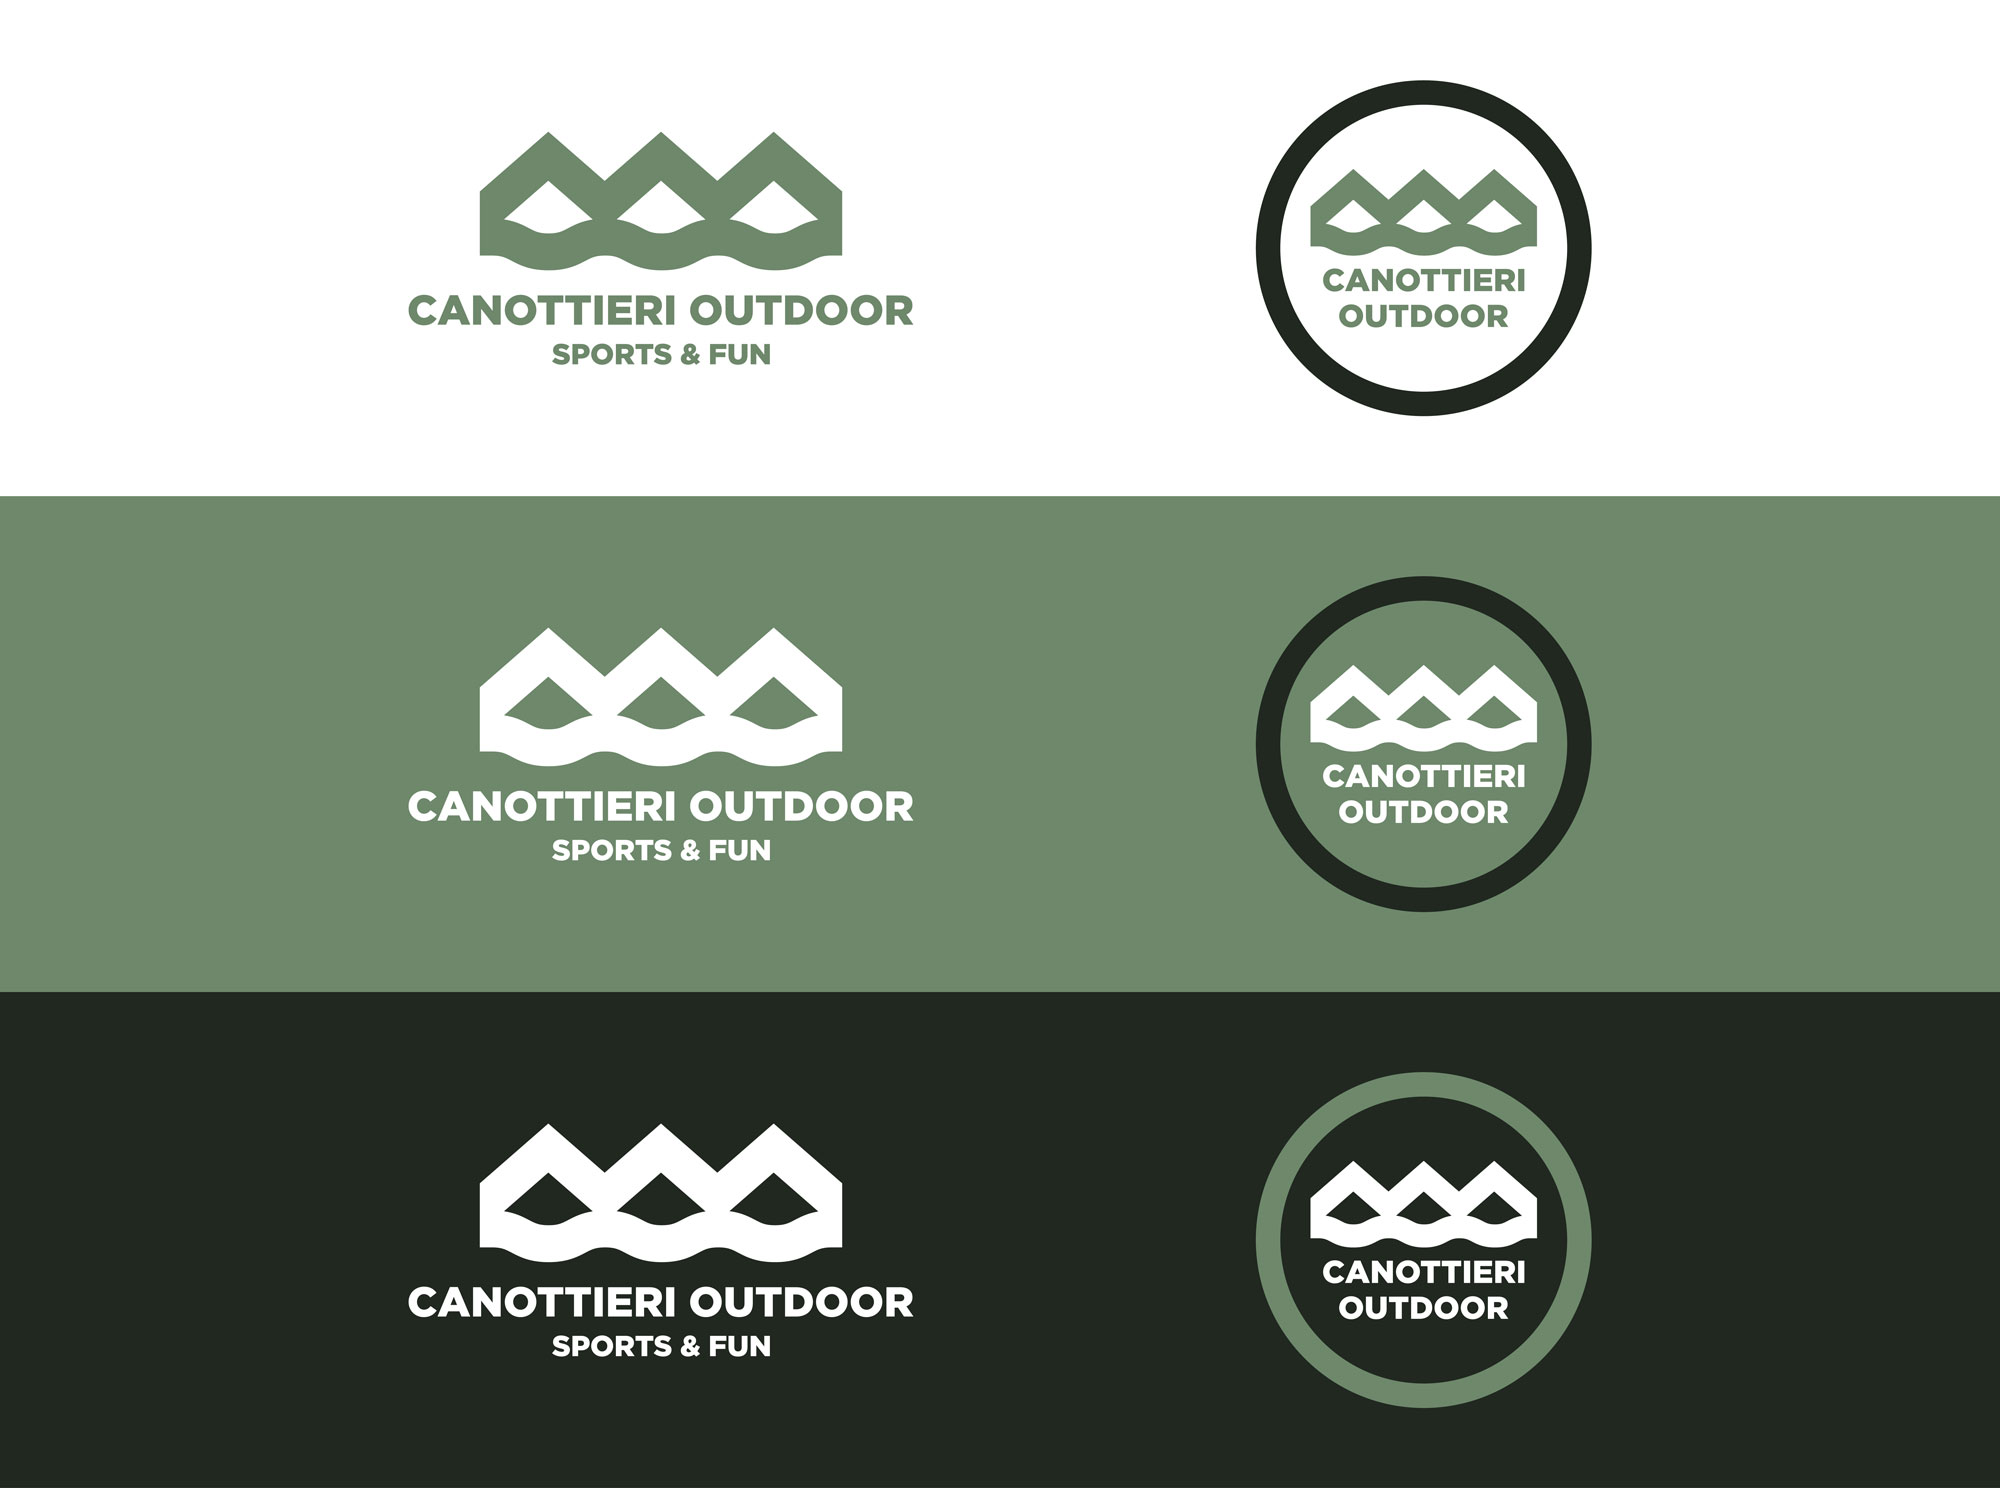 Logo e brand identity di Canottieri Outdoor Omegna realizzato da SEBA! grafico di Gravellona Toce nel VCO delle differenti versioni del logo su differenti sfondi